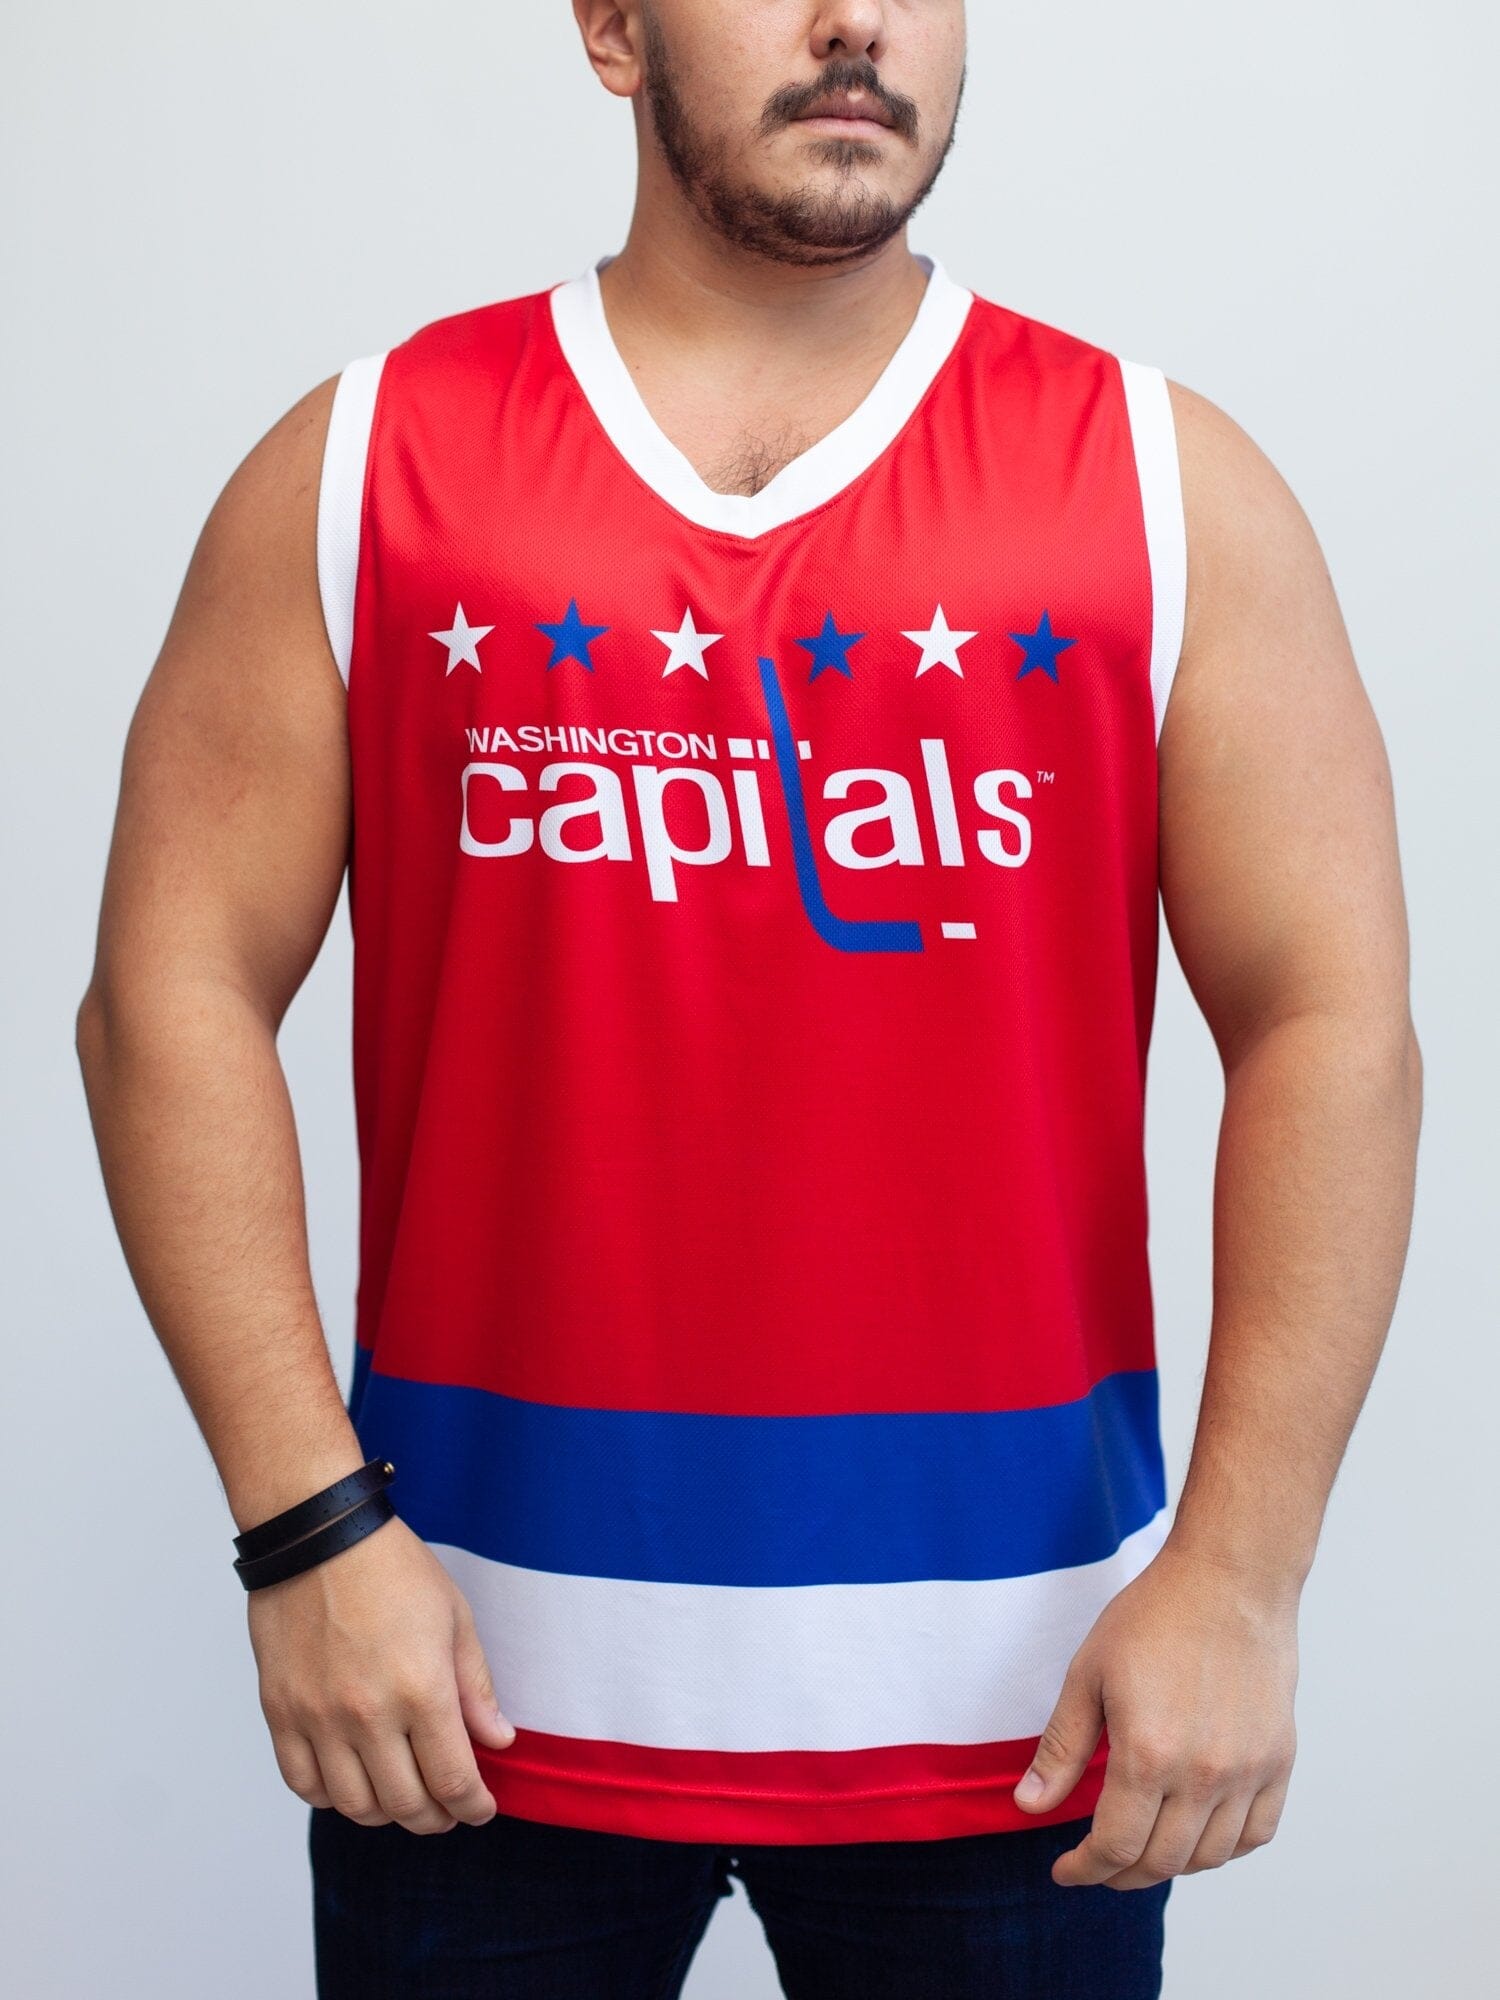 Washington Capitals Mens Jerseys, Capitals Uniforms